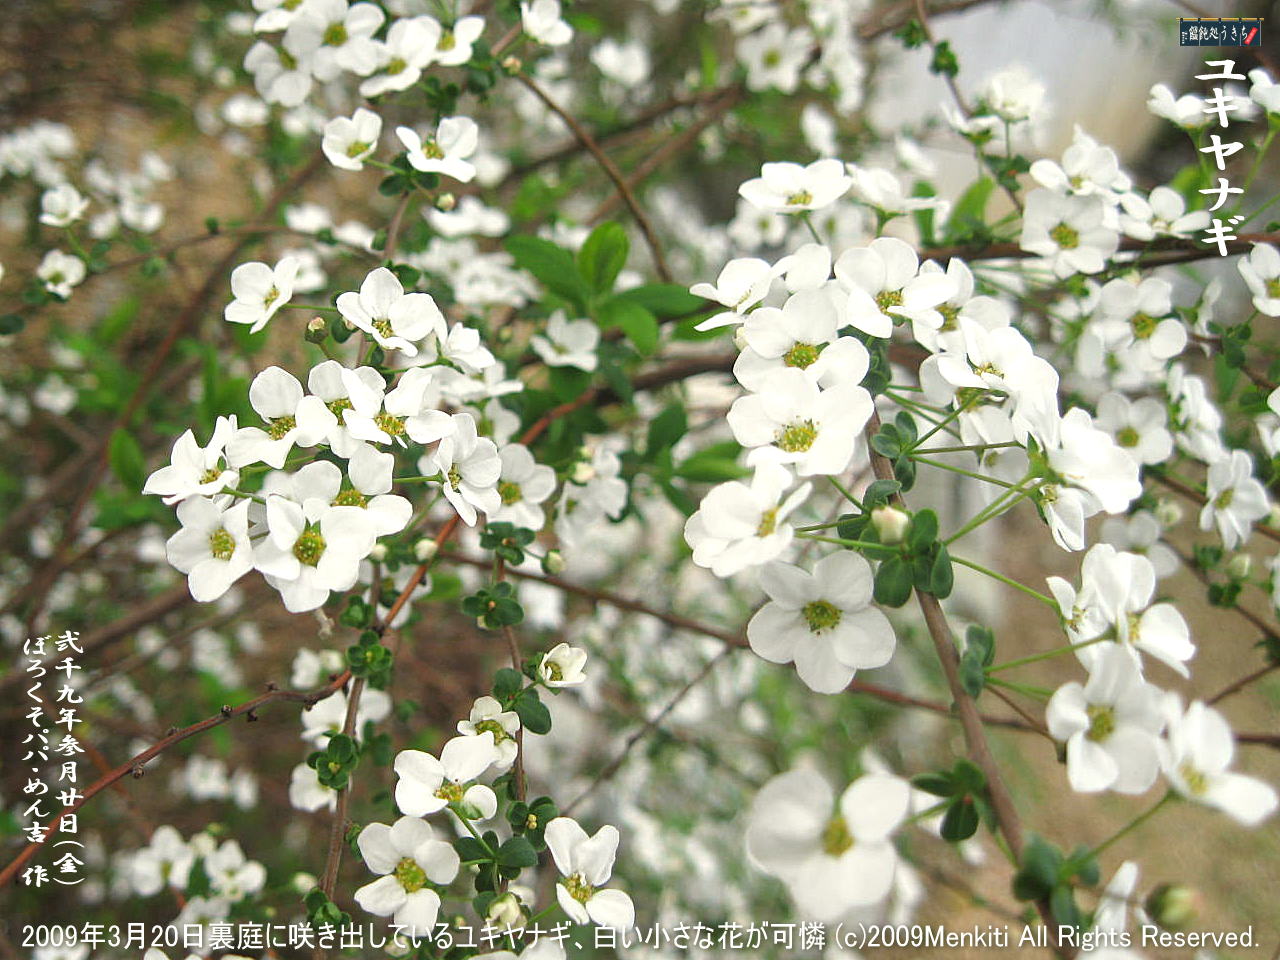 3／20（金）【ユキヤナギ】2009年3月20日裏庭に咲き出しているユキヤナギ、小さな蕾と白い花が可憐！＠キャツピ＆めん吉の【ぼろくそパパの独り言】
　　　　▼クリックで1280x960pxlsに拡大します。